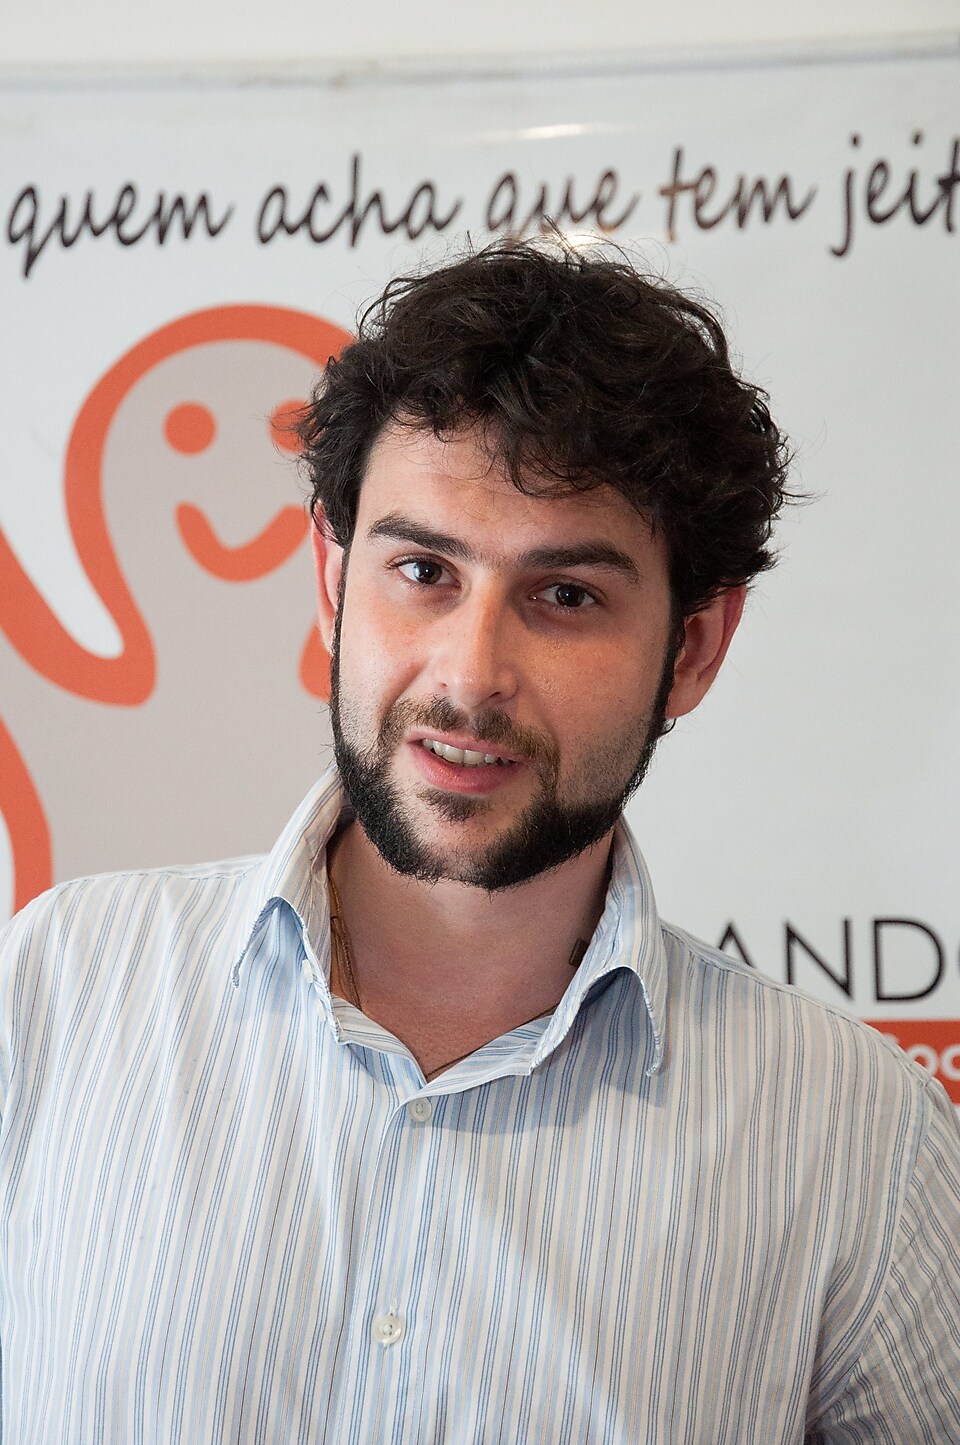 “Argilando” founder, Pedro Ronan Marcondes